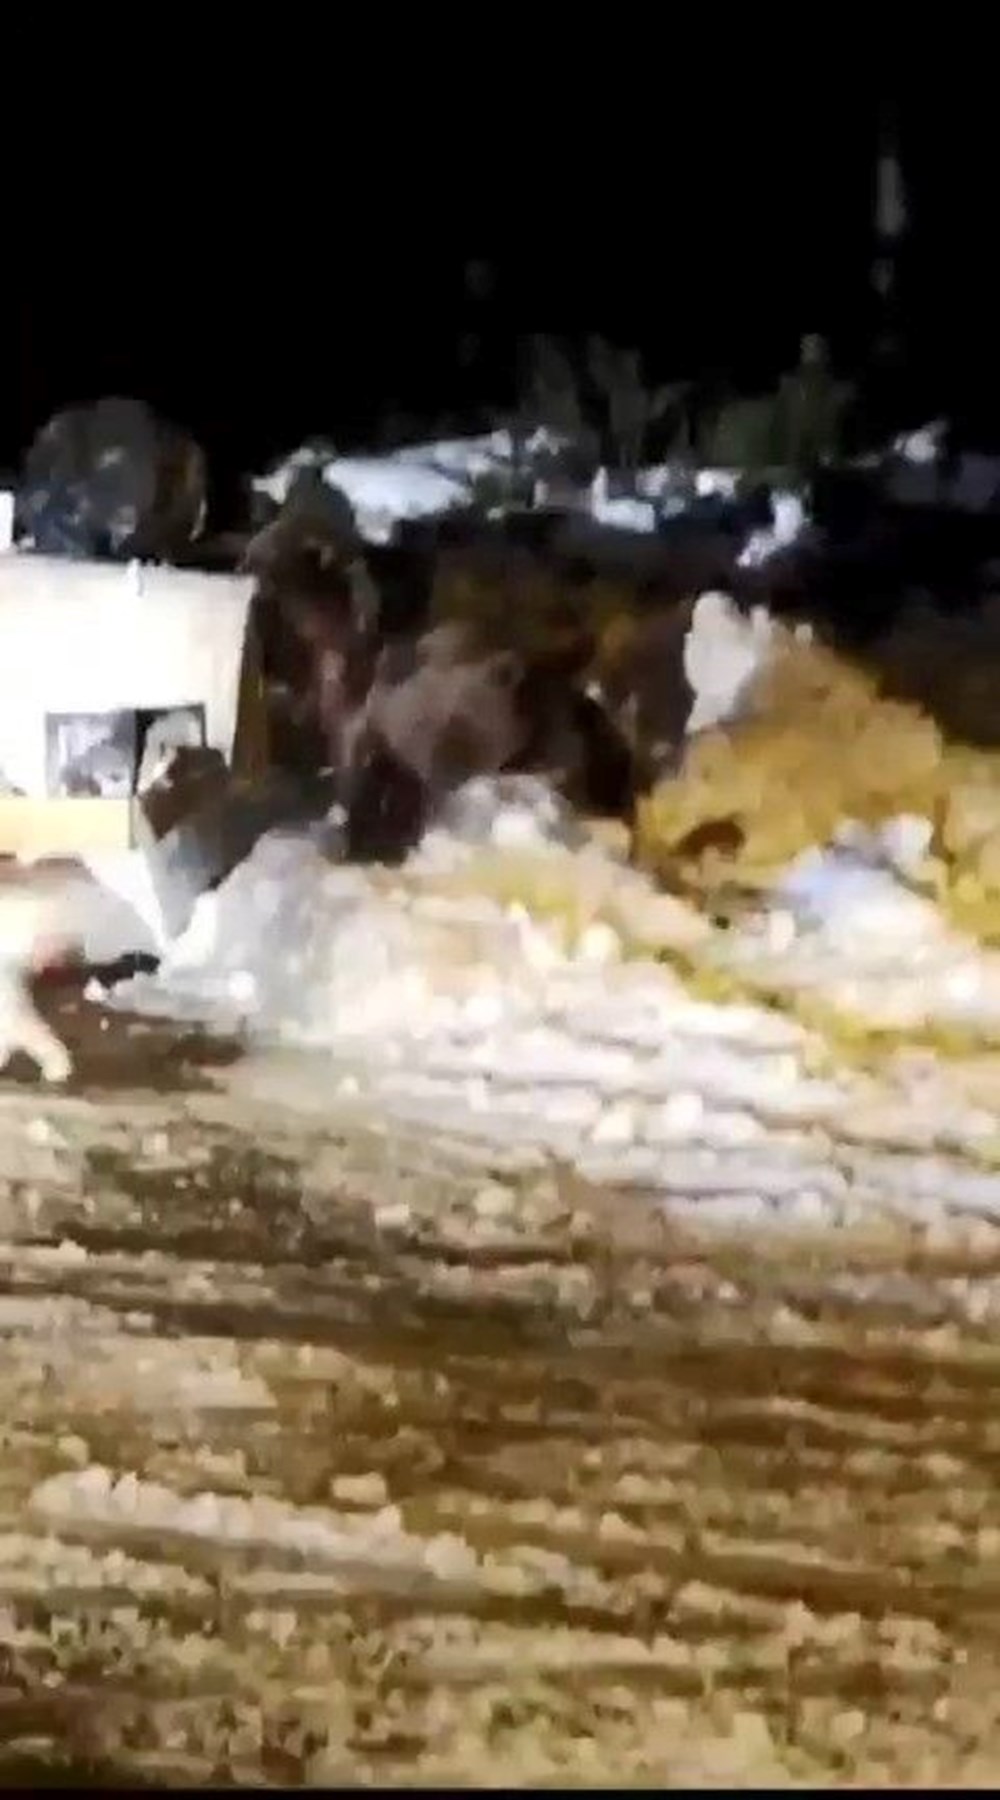 Uludağ’da kış uykusuna dalamayan ayı ailesi kendilerini
rahatsız eden köpeğe saldırdı - 2